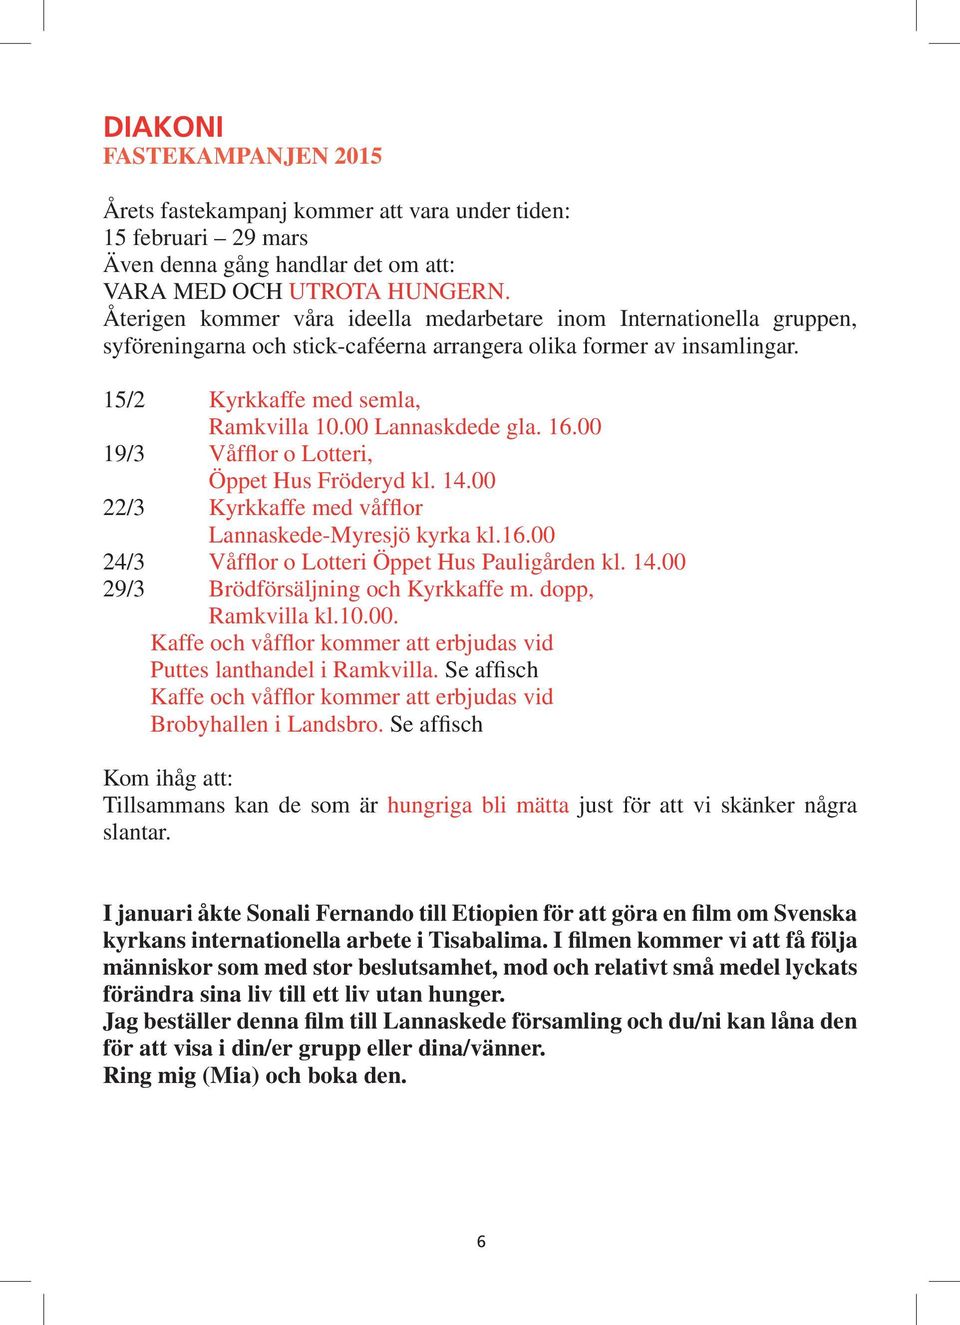 00 Lannaskdede gla. 16.00 19/3 Våfflor o Lotteri, Öppet Hus Fröderyd kl. 14.00 22/3 Kyrkkaffe med våfflor Lannaskede-Myresjö kyrka kl.16.00 24/3 Våfflor o Lotteri Öppet Hus Pauligården kl. 14.00 29/3 Brödförsäljning och Kyrkkaffe m.